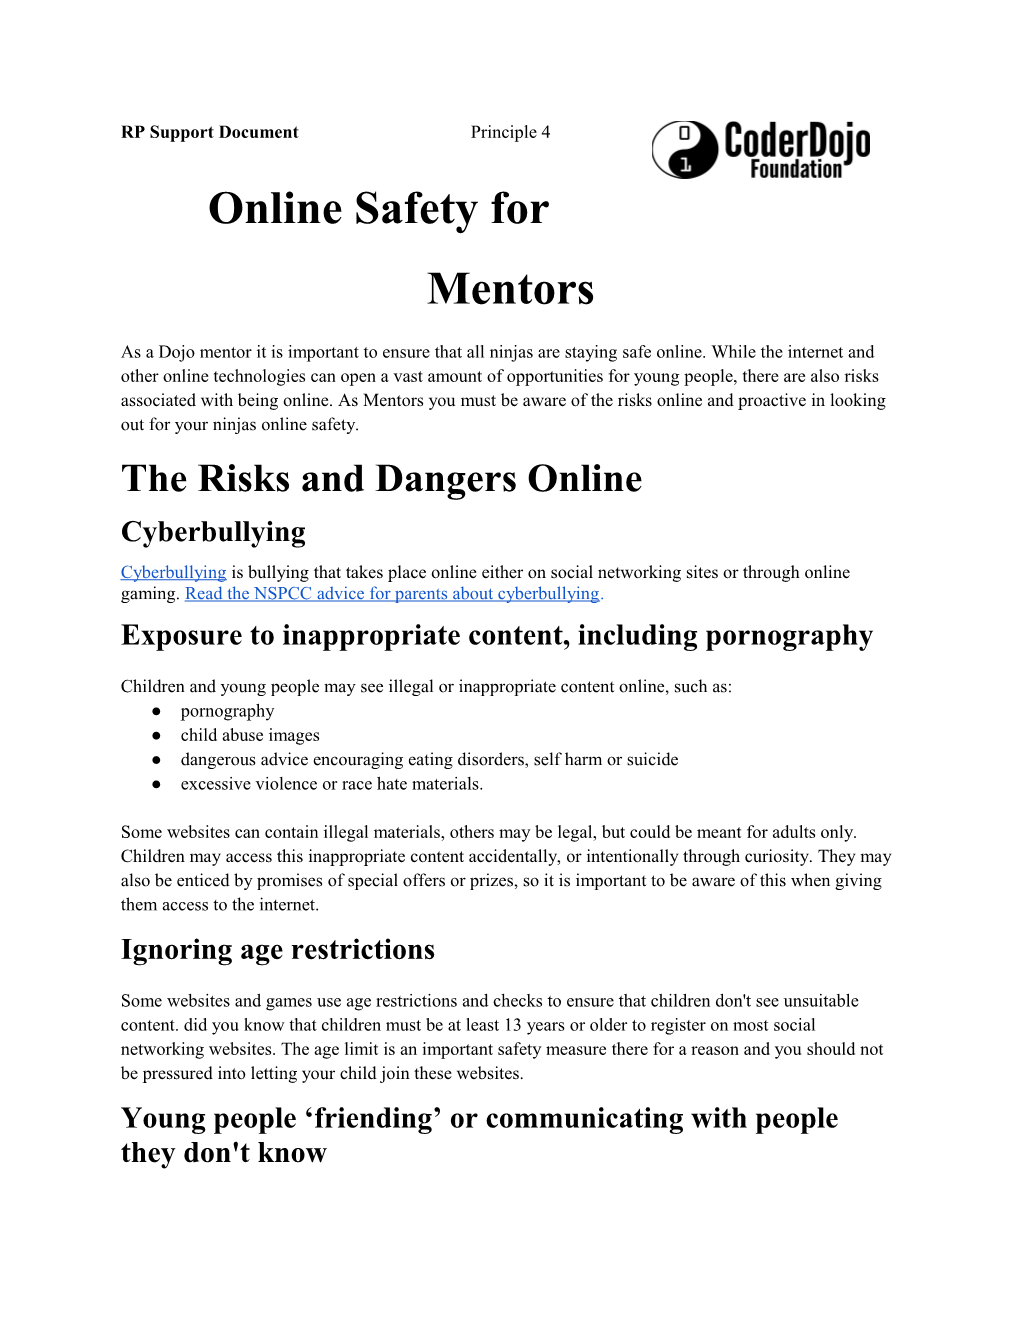 Online Safety for Mentors